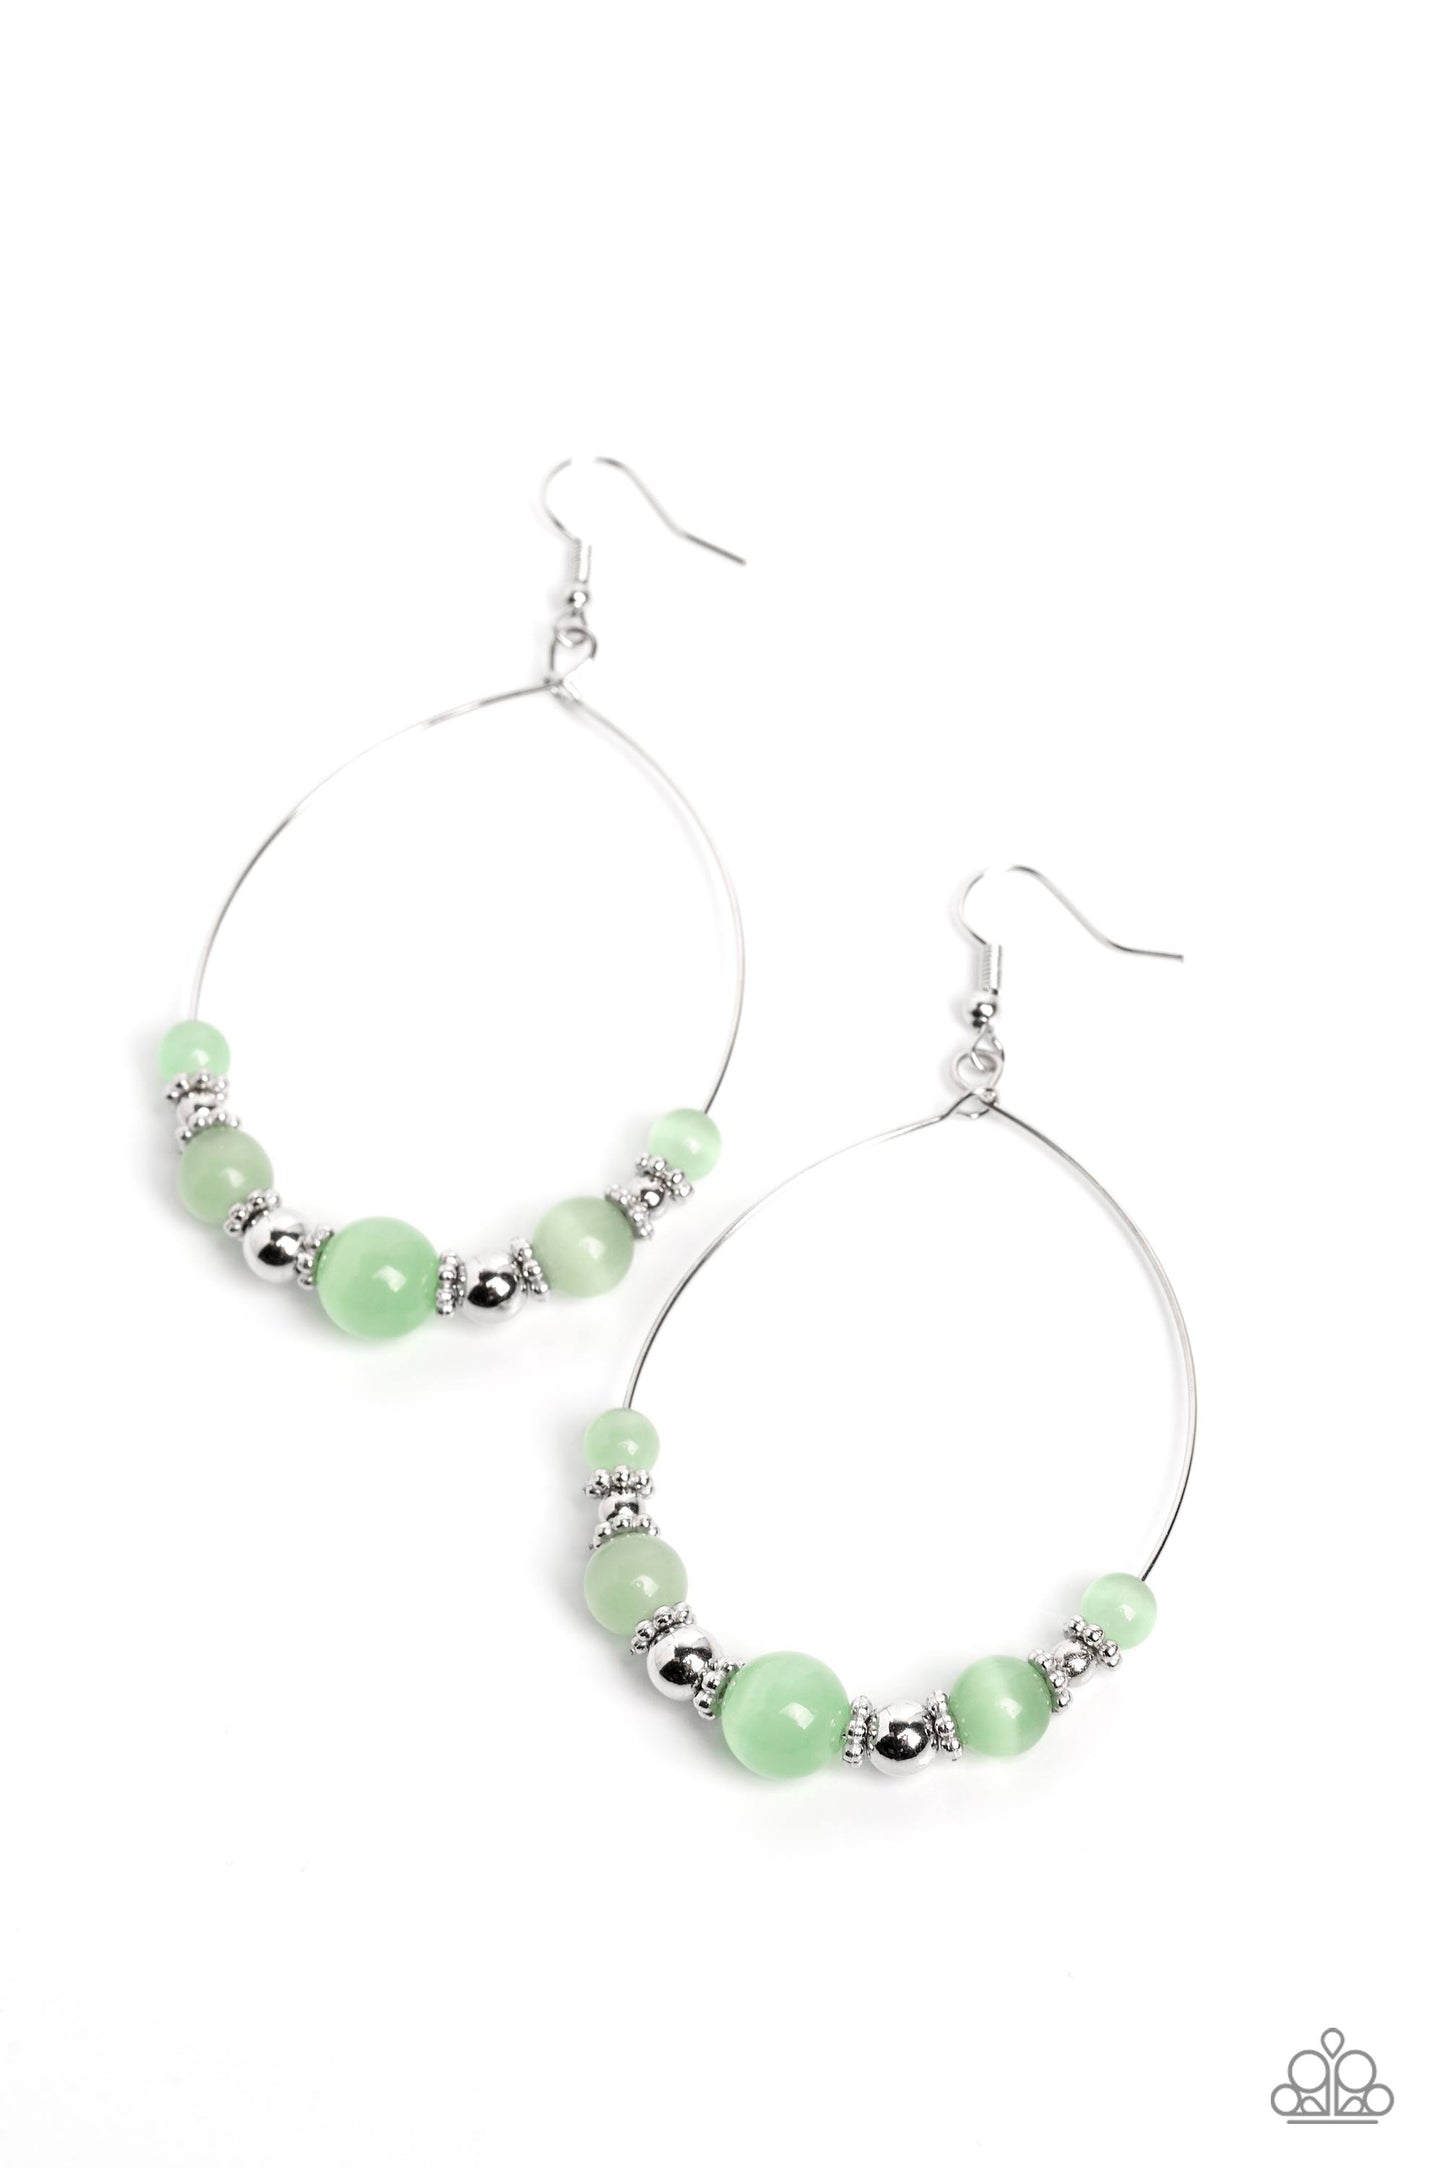 Cats Eye Charisma - green - Paparazzi earrings